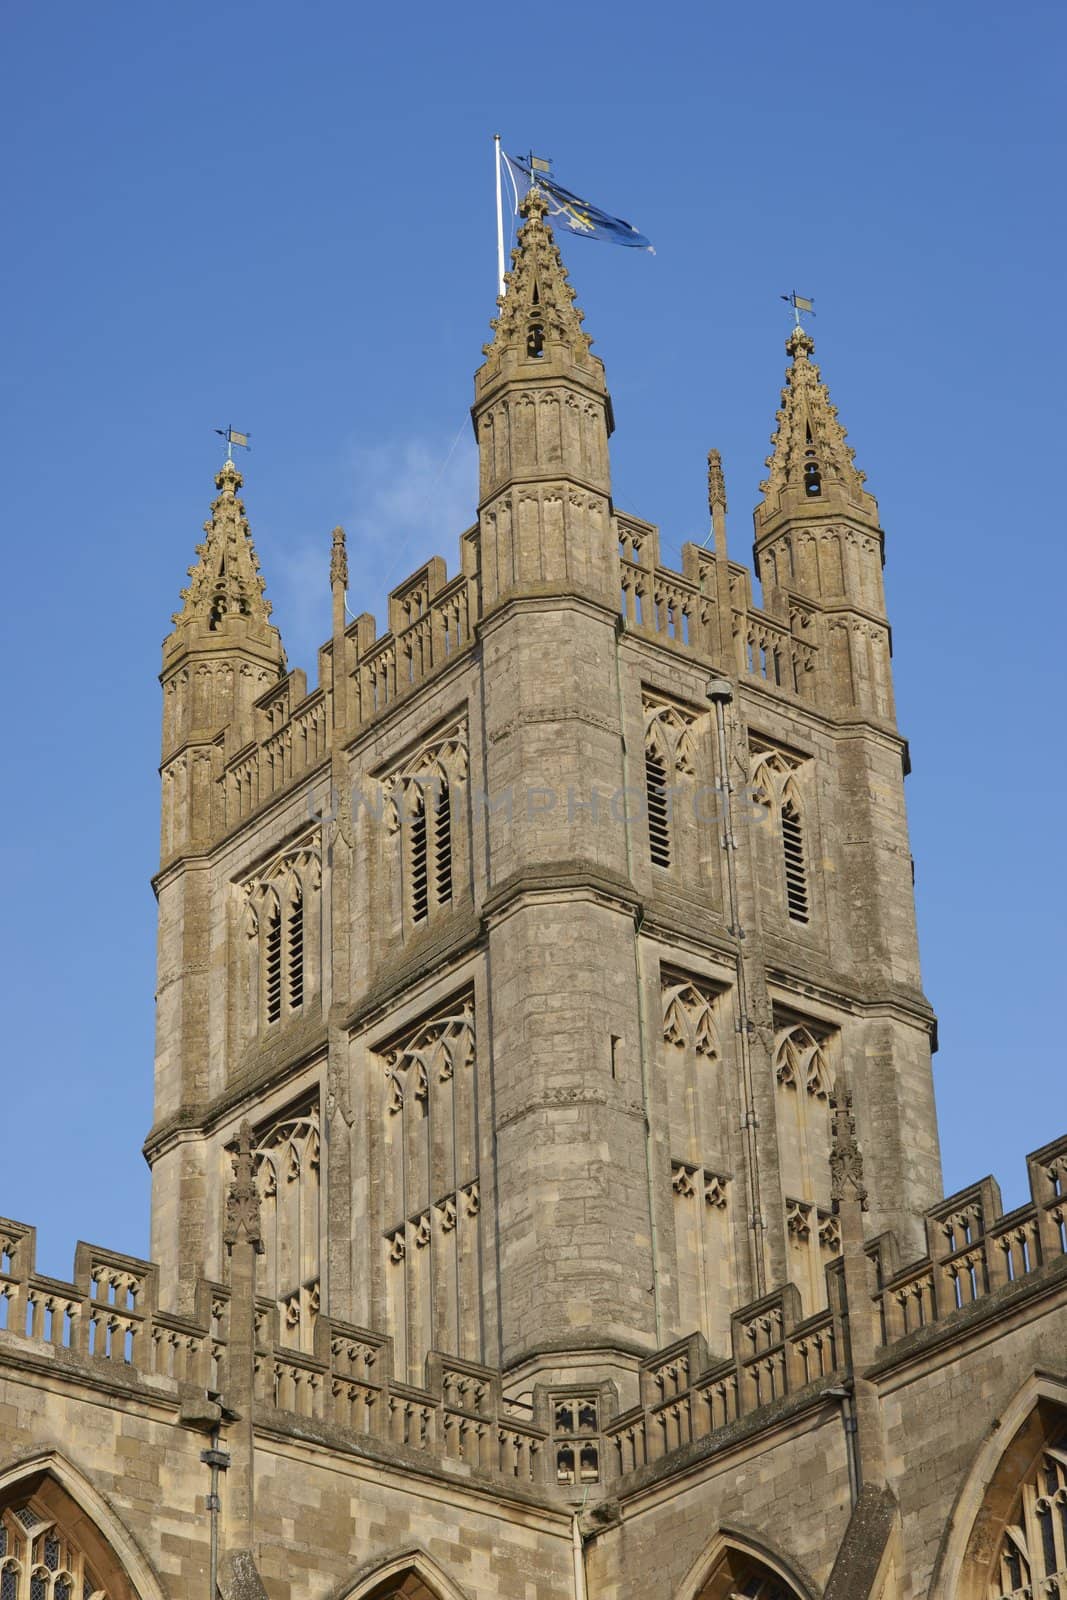 Main of tower of Bath Abbey. 16th Century church, Bath, England, United Kingdom